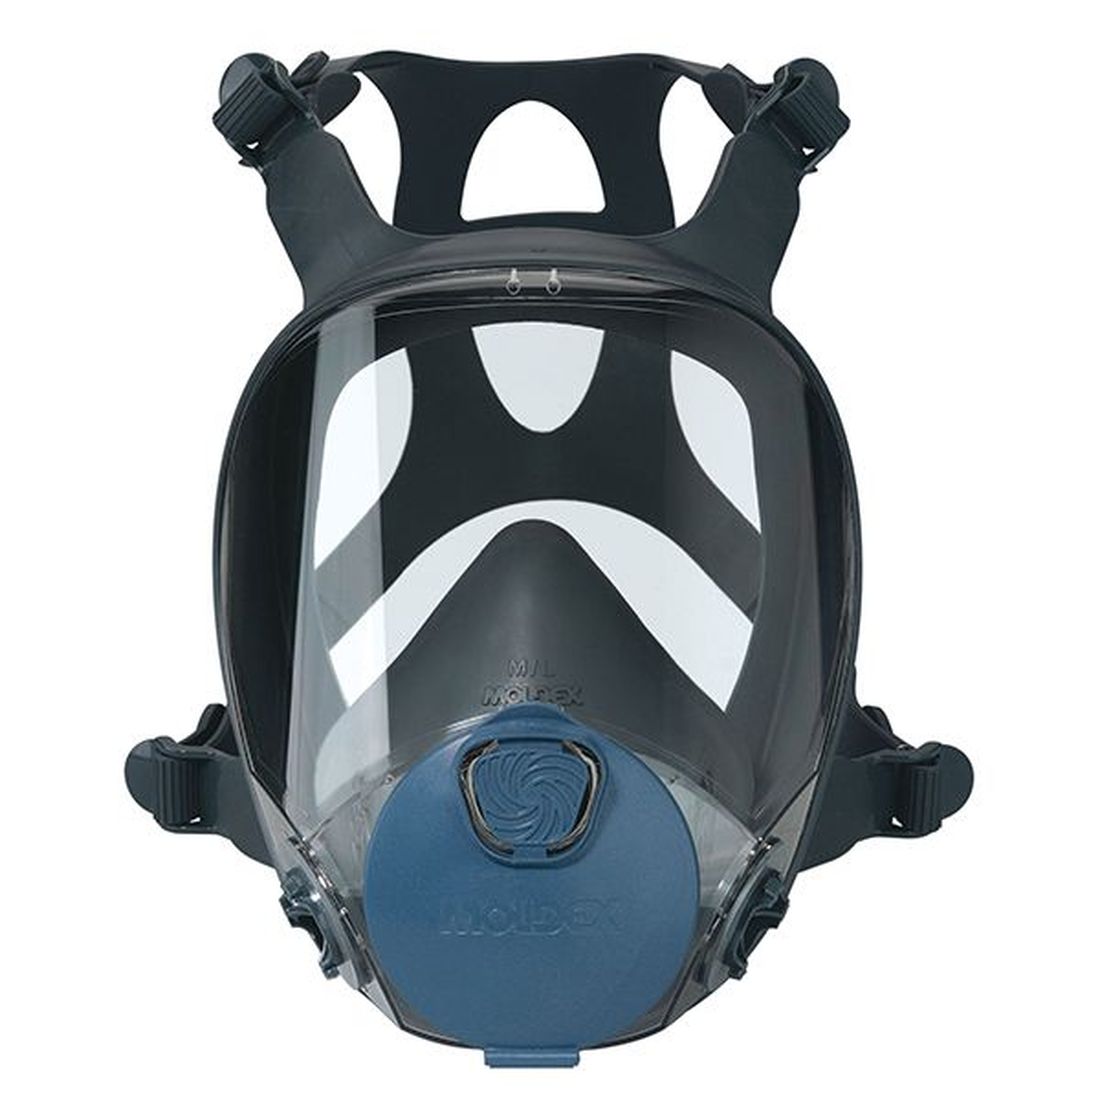 Moldex Series 9000 Full Face Mask (Medium) No Filters                                  